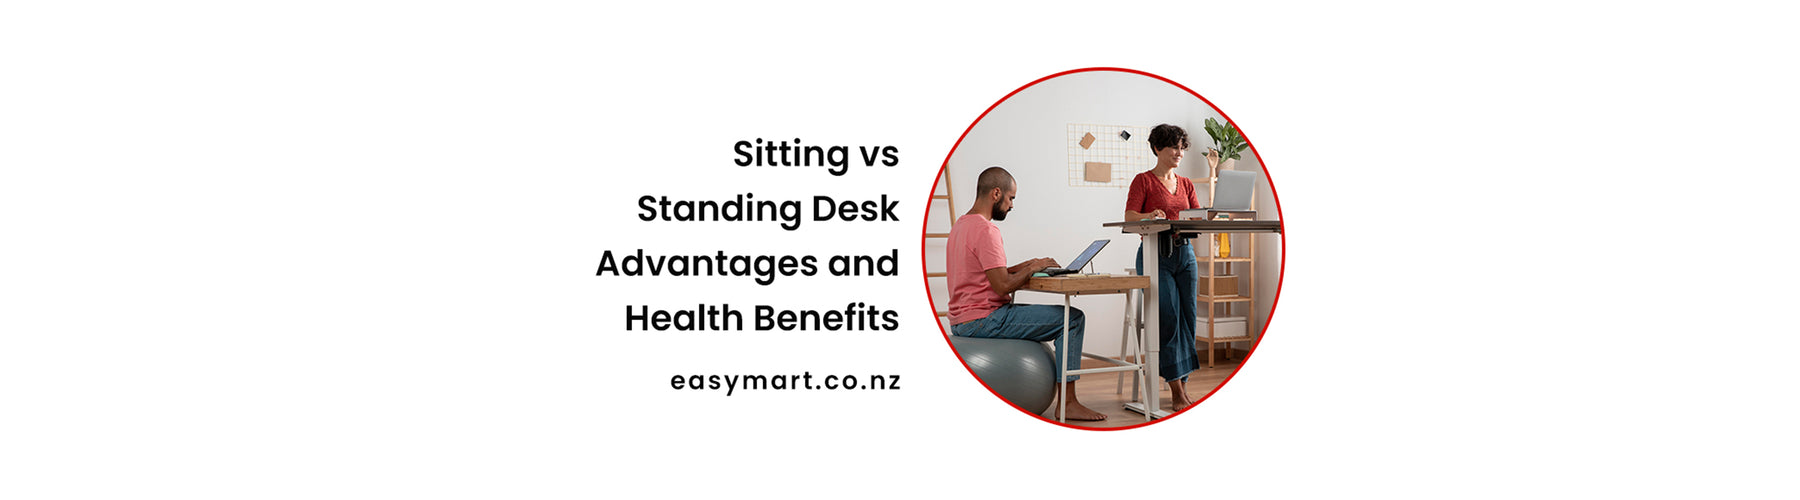 sitting vs standing desk